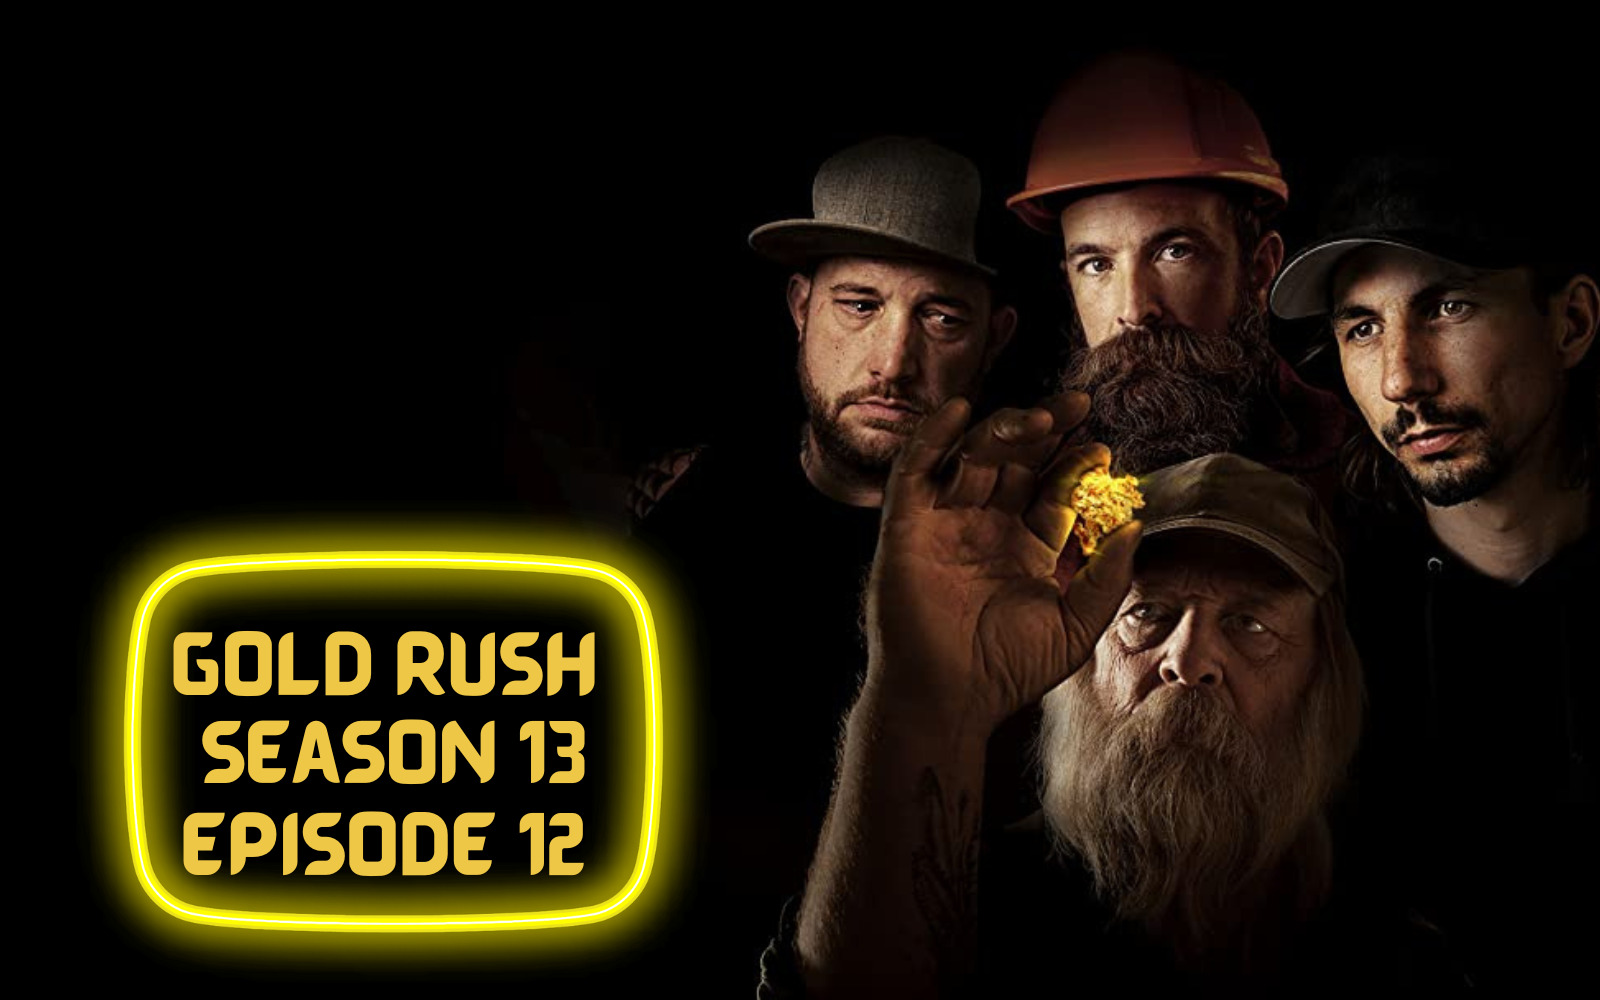 Gold Rush Season 13 Episode 12 spoiler